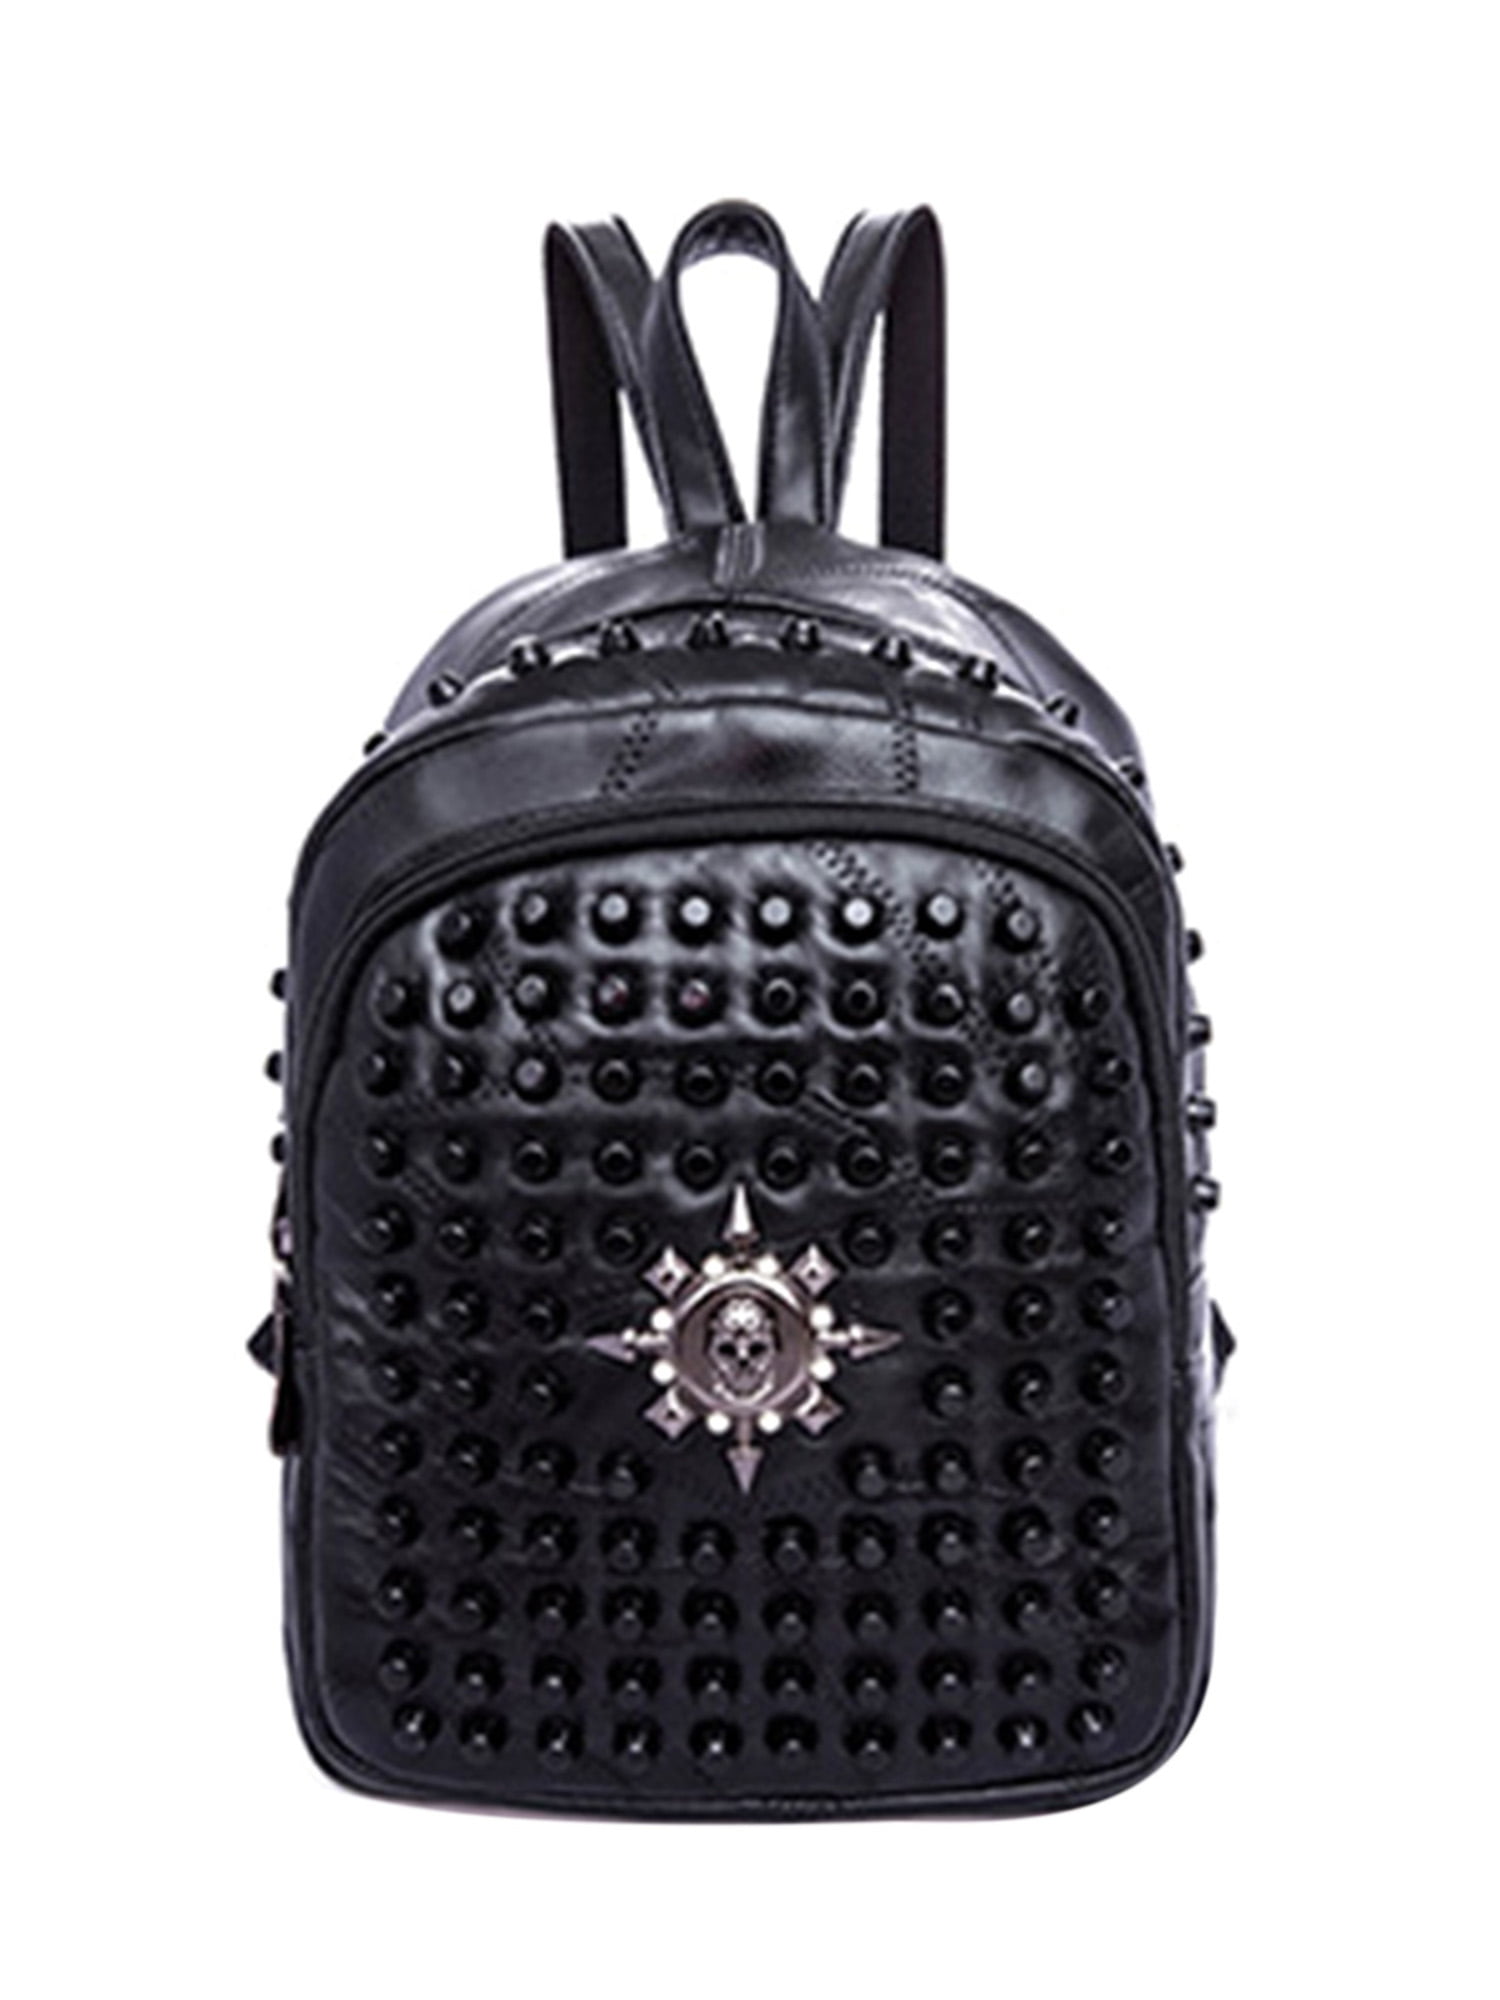 Ladies Women PU Leather Backpack Rivet Studded Cute Satchel School Bags